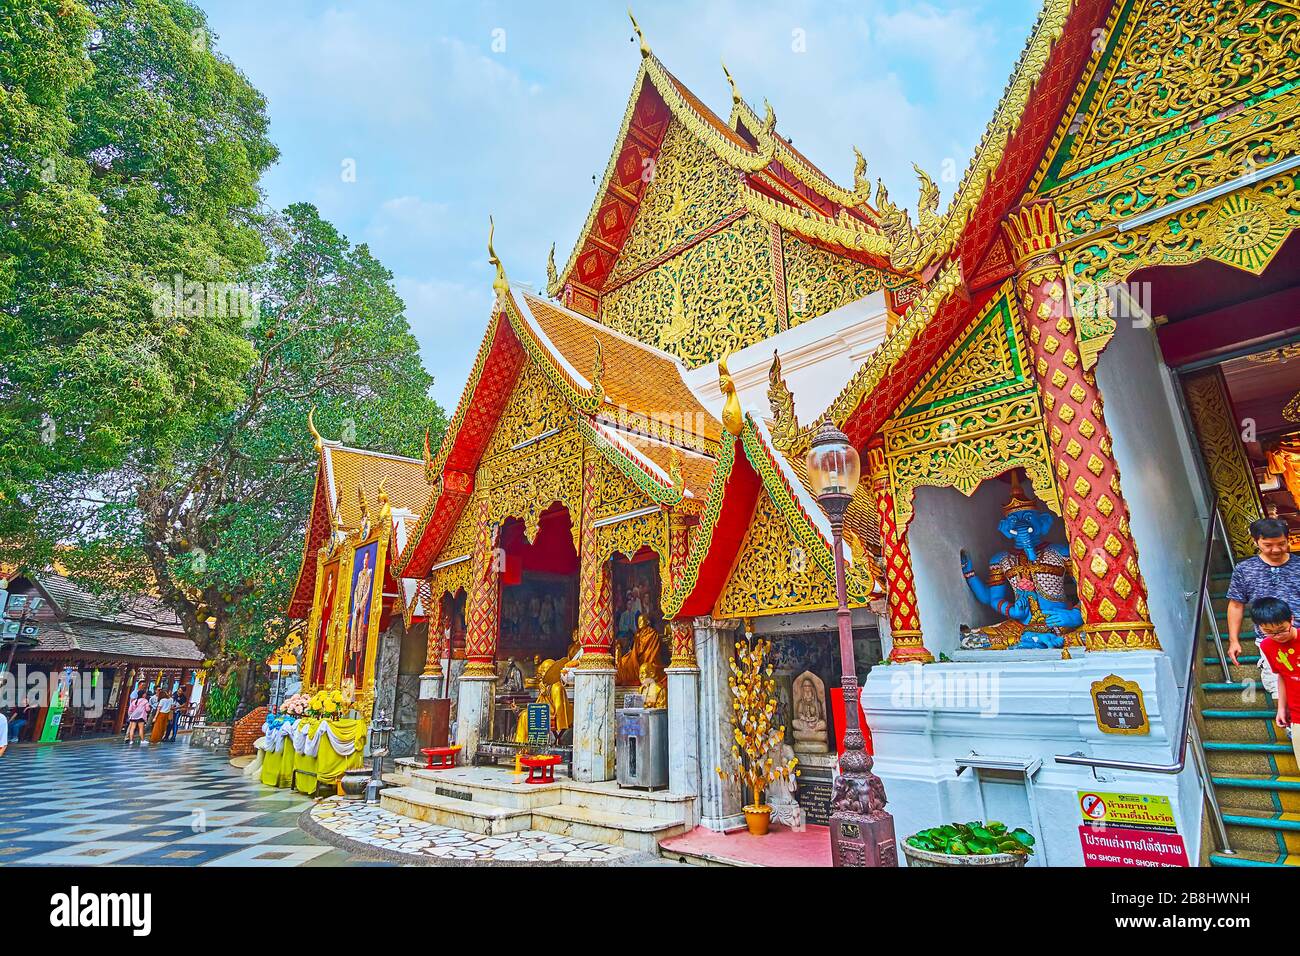 CHIANG mai, THAILANDIA - 7 MAGGIO 2019: La straordinaria architettura Lanna di Wat Phra That Doi Suthep tempio con ricche decorazioni, statue buddiste Foto Stock